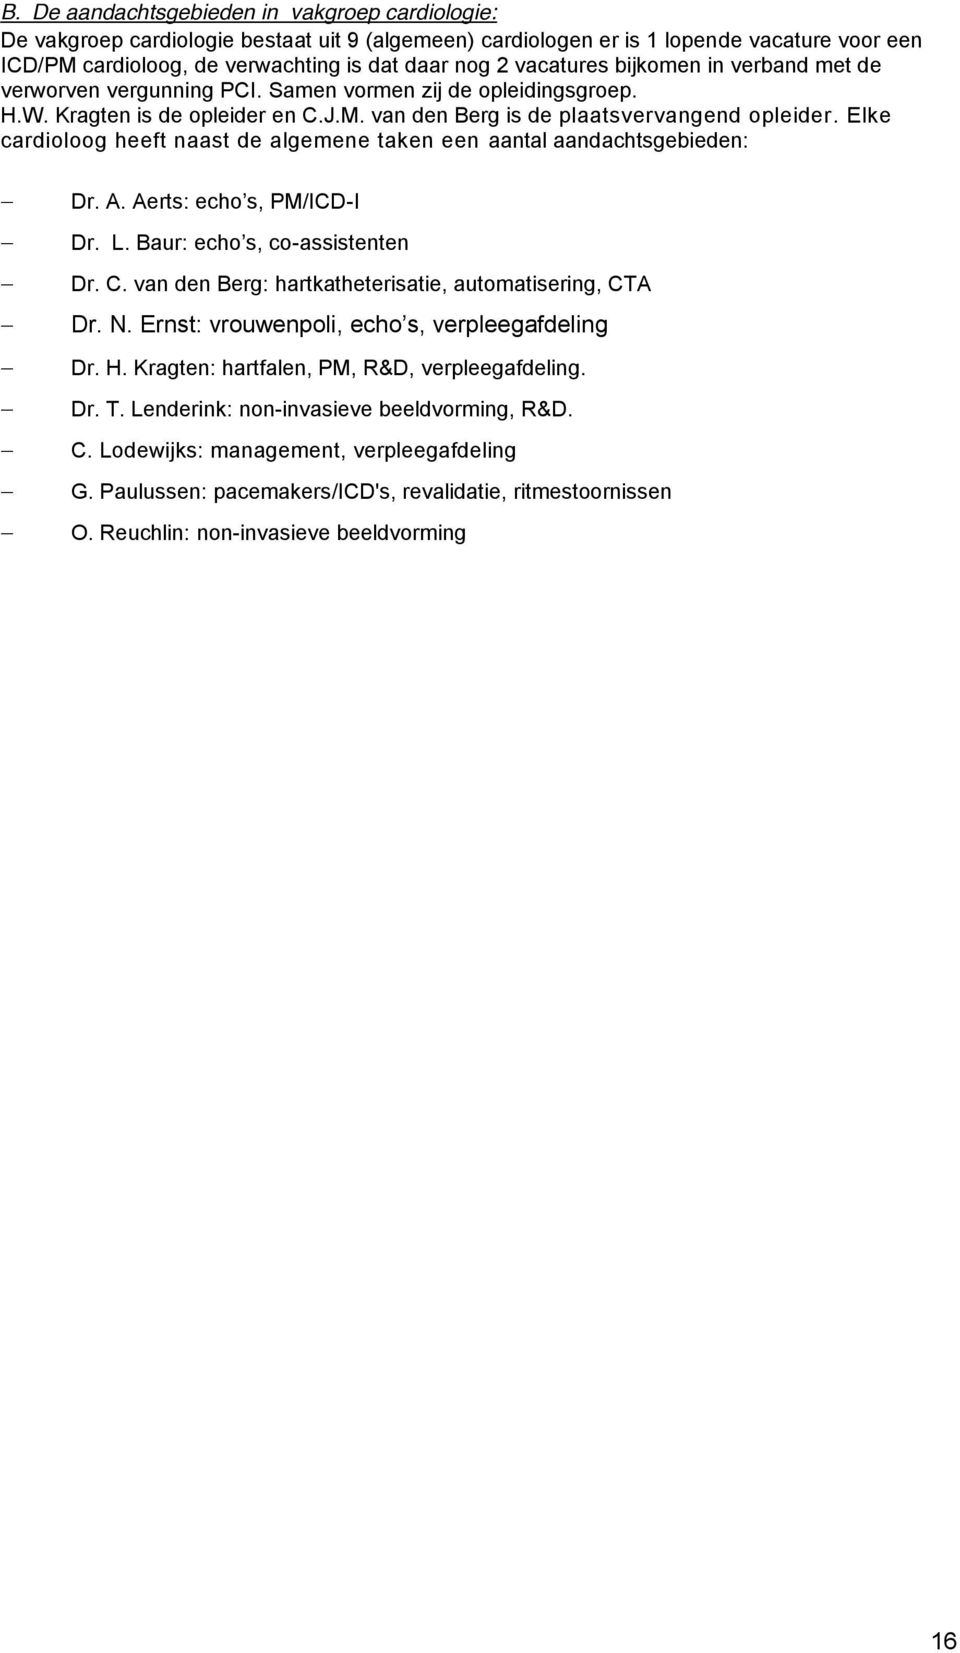 Elke cardioloog heeft naast de algemene taken een aantal aandachtsgebieden: -I -assistenten Dr. C. van den Berg: hartkatheterisatie, automatisering, CTA ing Dr. H.